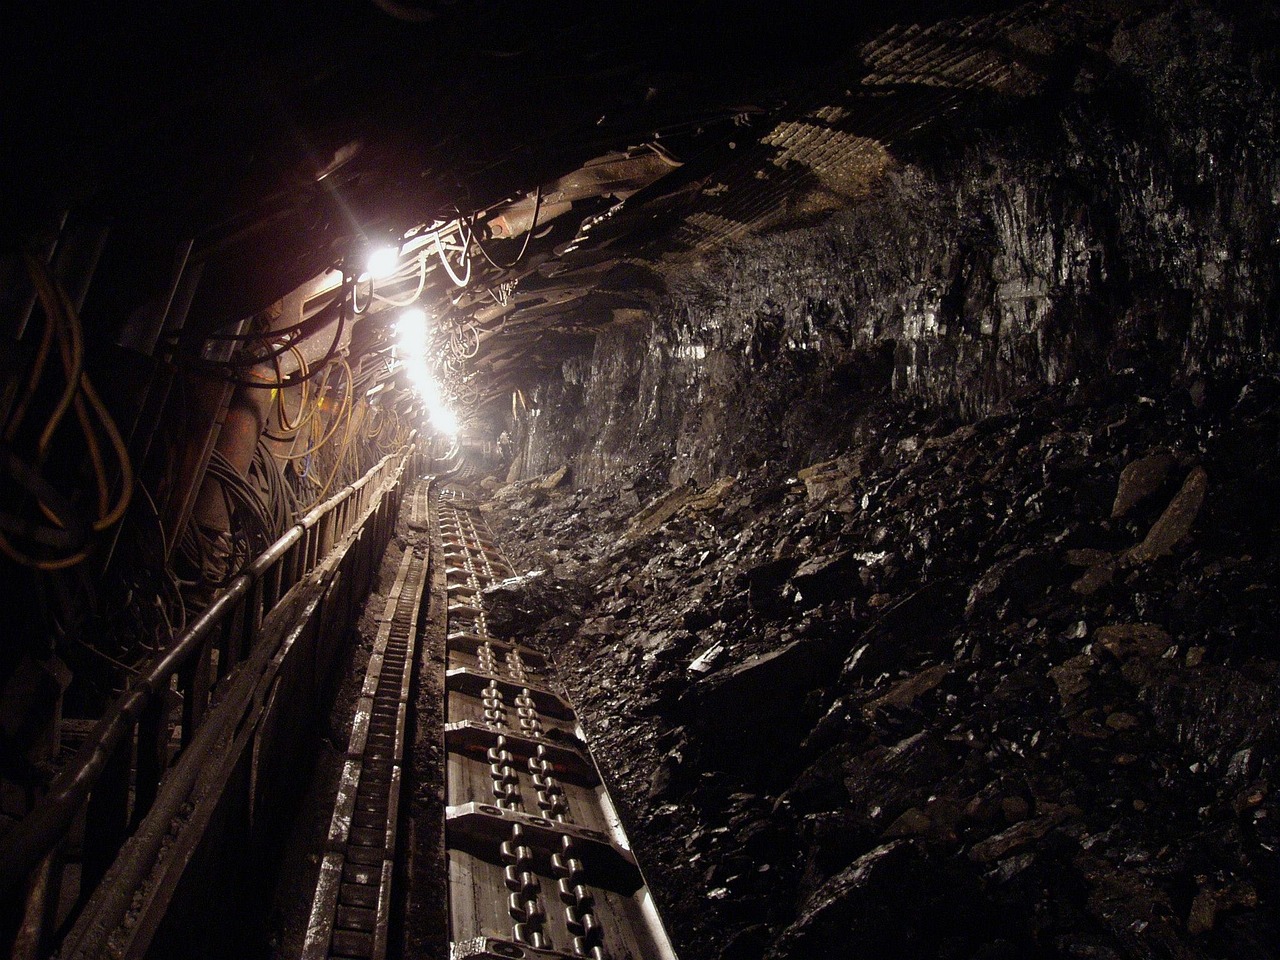 Ρωσία: Παγιδευμένοι δεκατρείς εργάτες σε χρυσωρυχείο μετά από κατολίσθηση - Σε εξέλιξη επιχείρηση διάσωσης